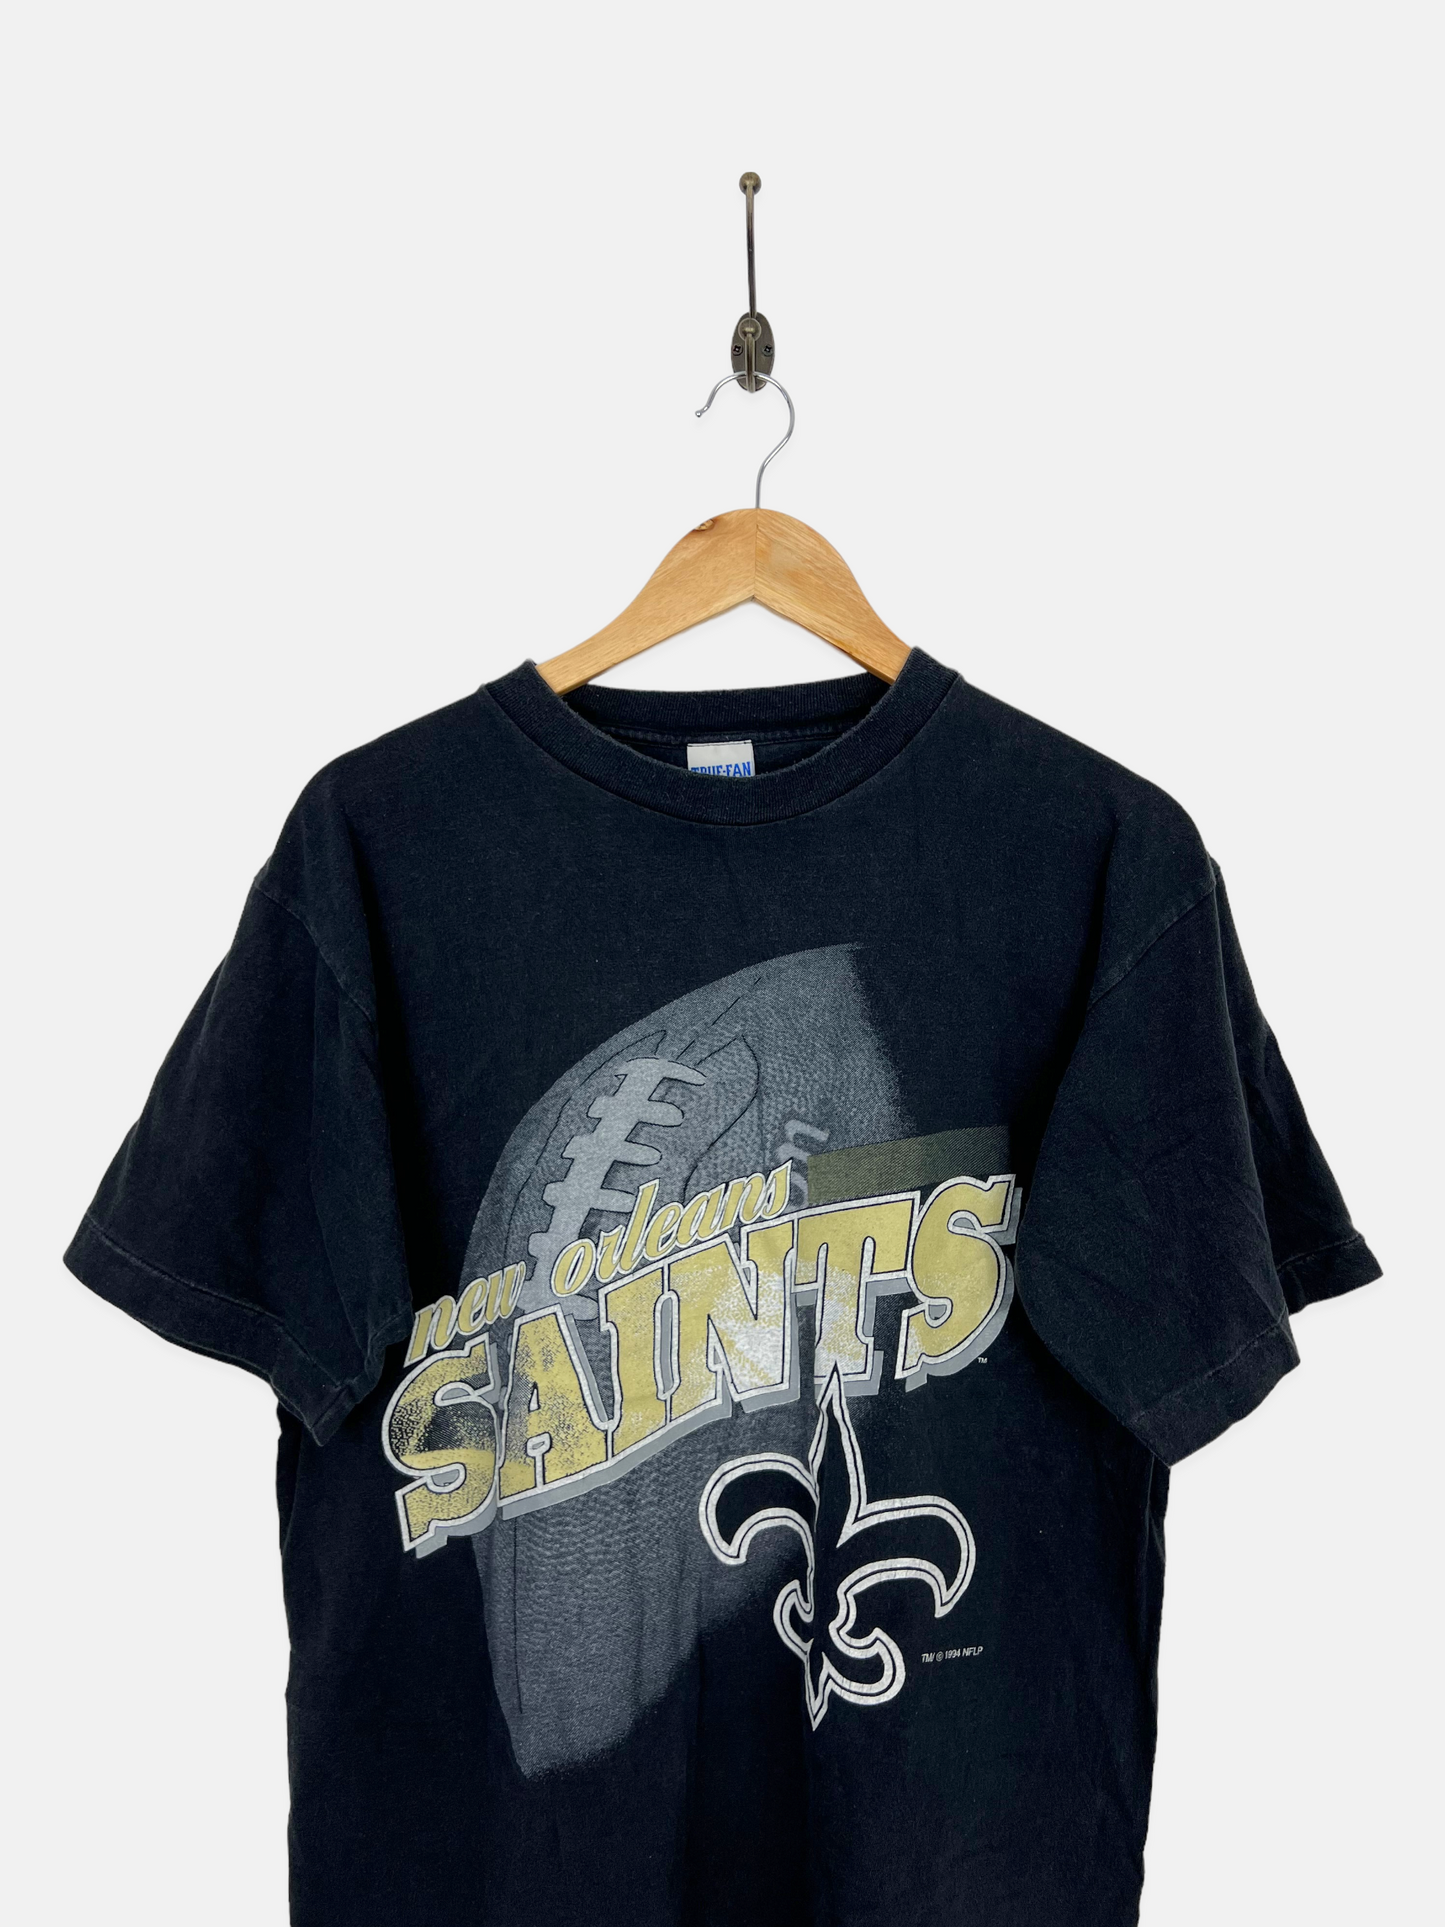 1994 New Orleans Saints NFL Vintage T-Shirt Size 10-12